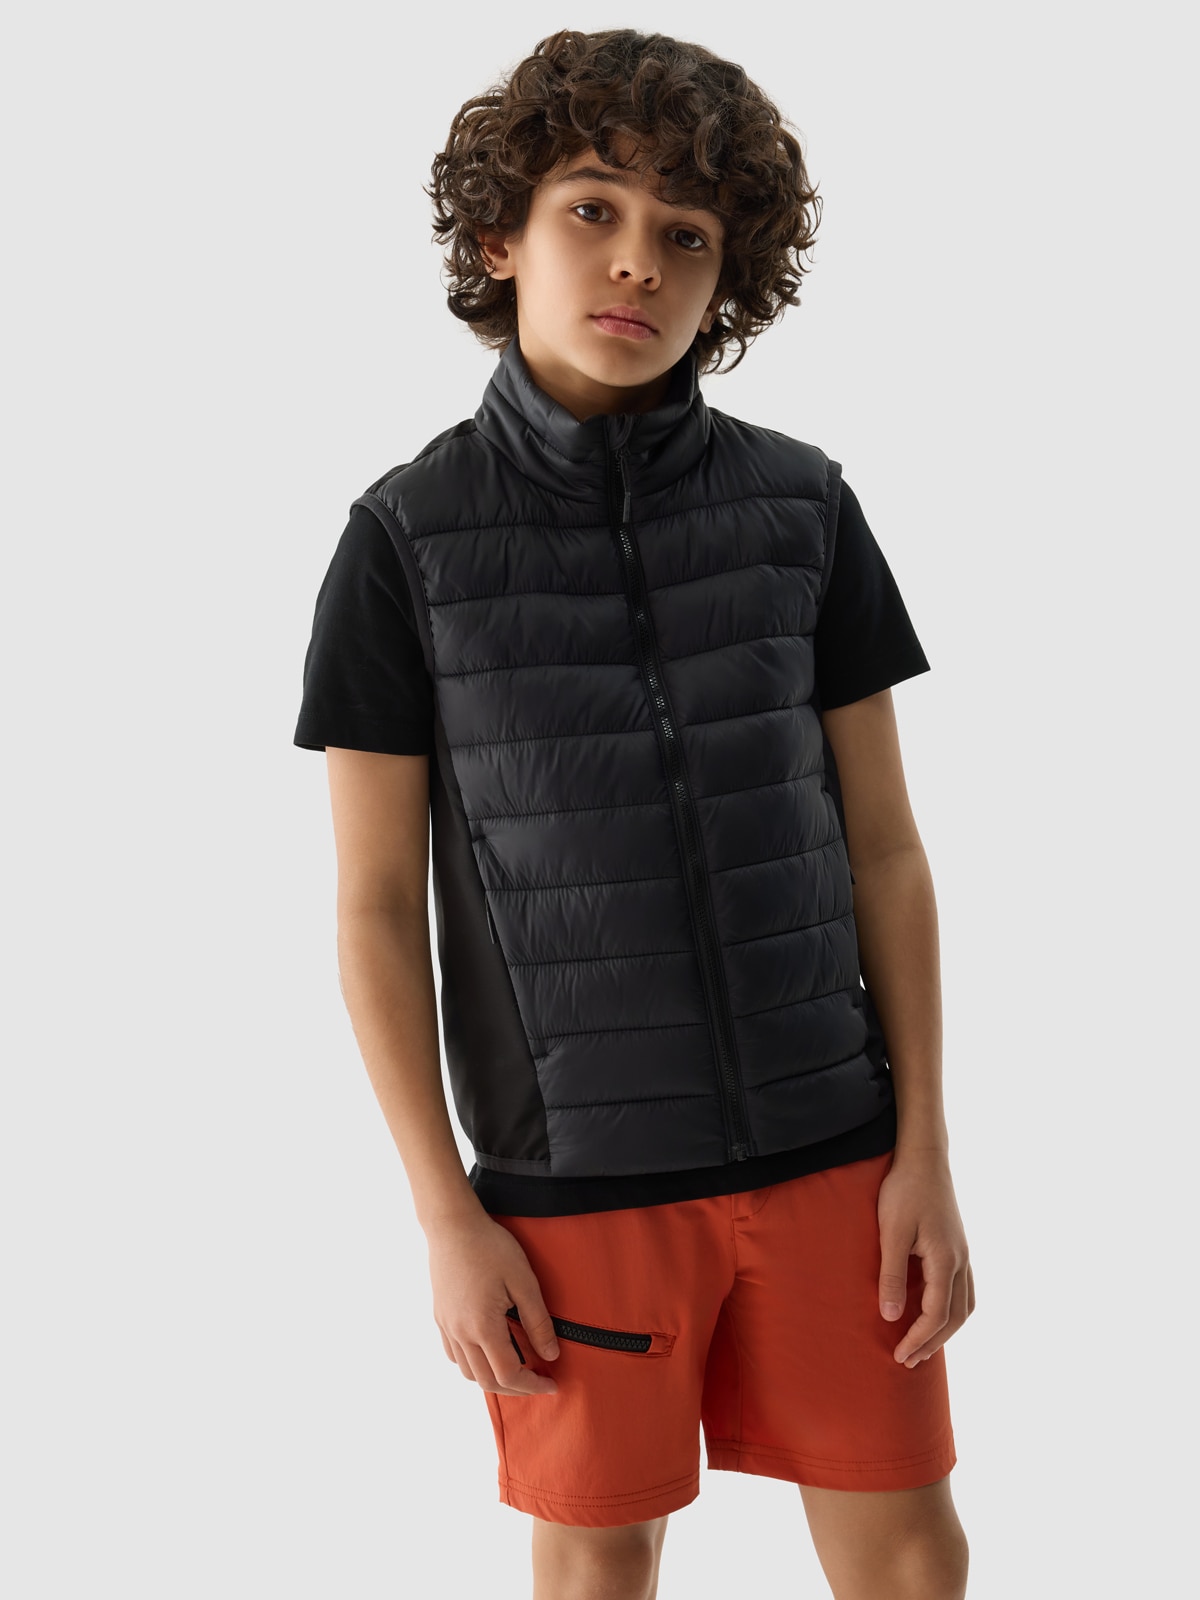 Chlapecká péřová treková vesta s výplní ze syntetického peří - černá